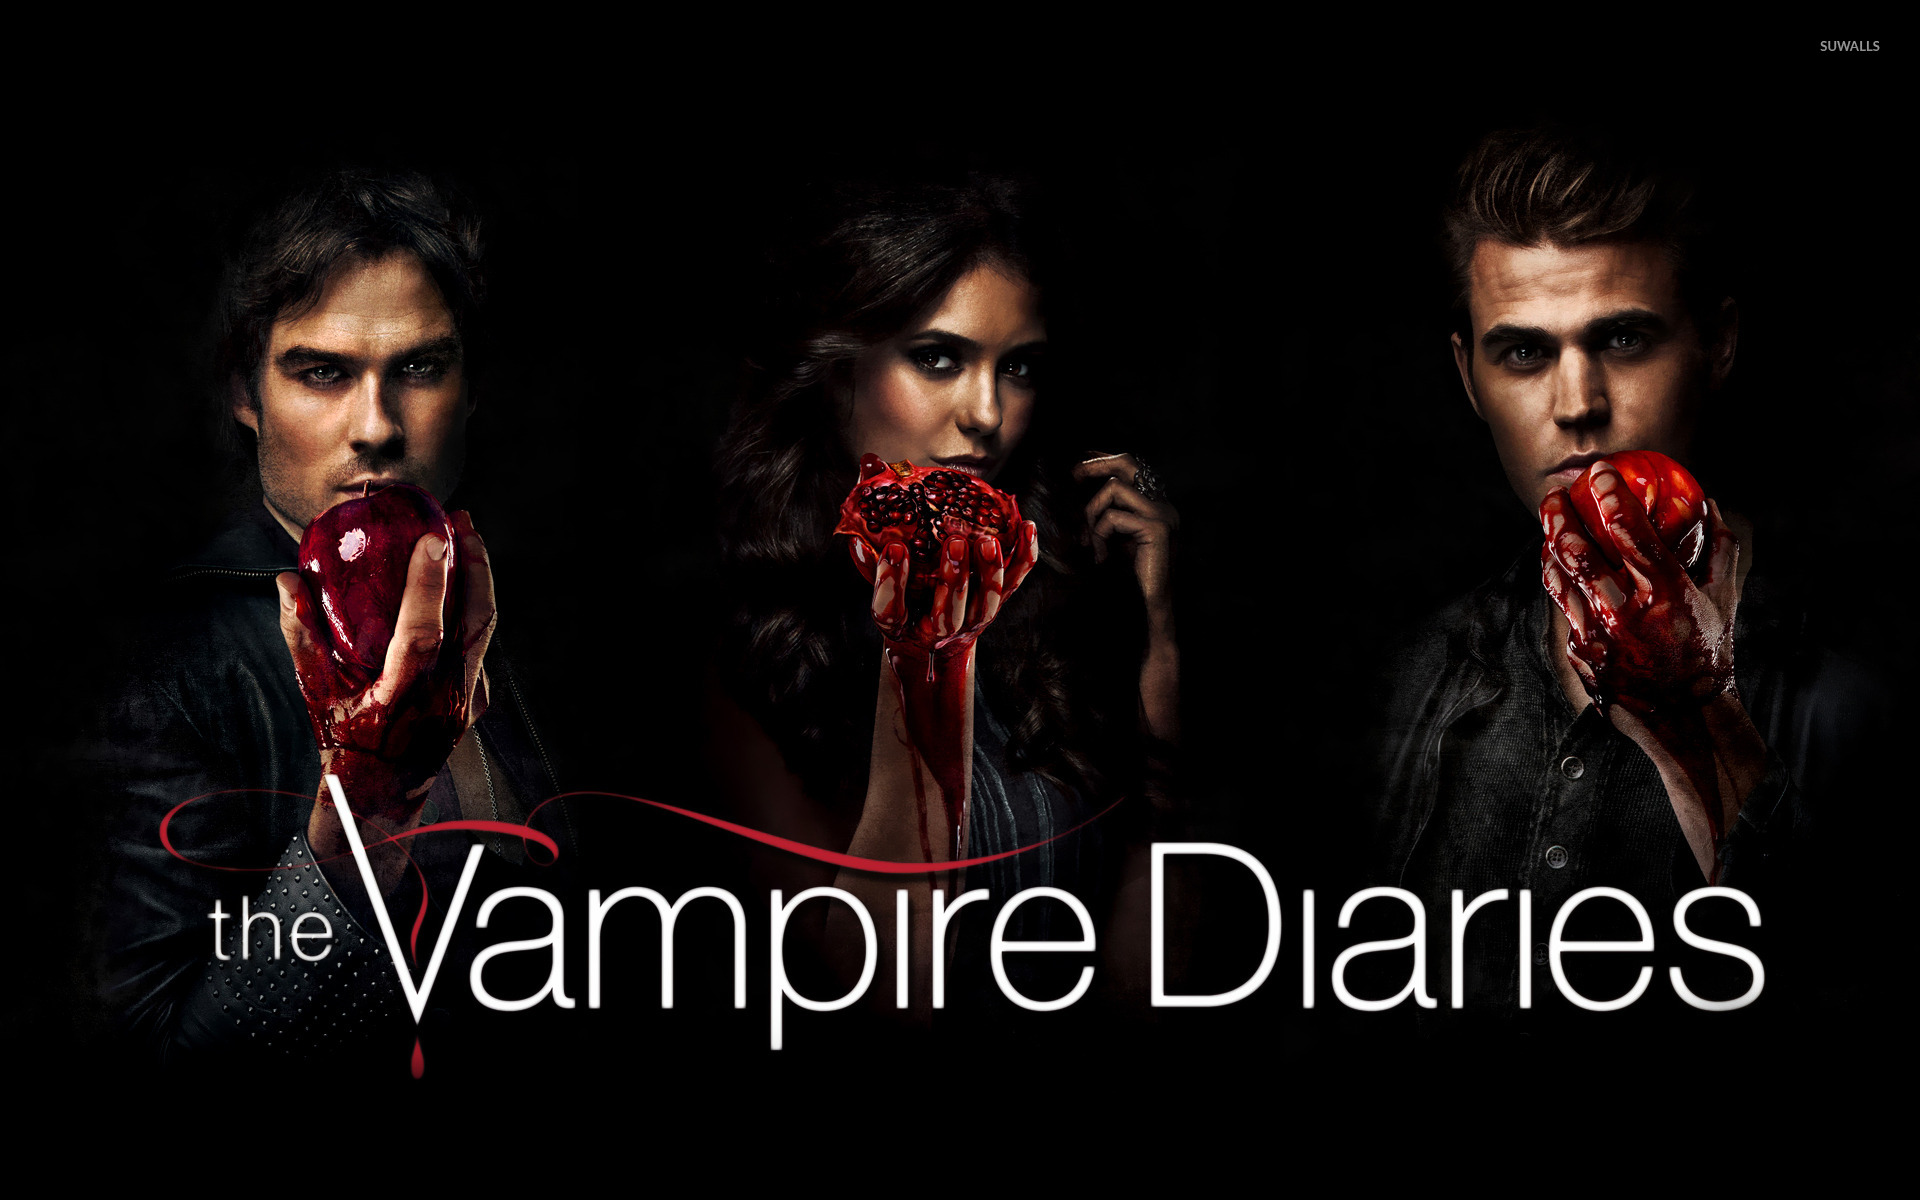 The Vampire Diaries iPhone Wallpapers - Top Những Hình Ảnh Đẹp